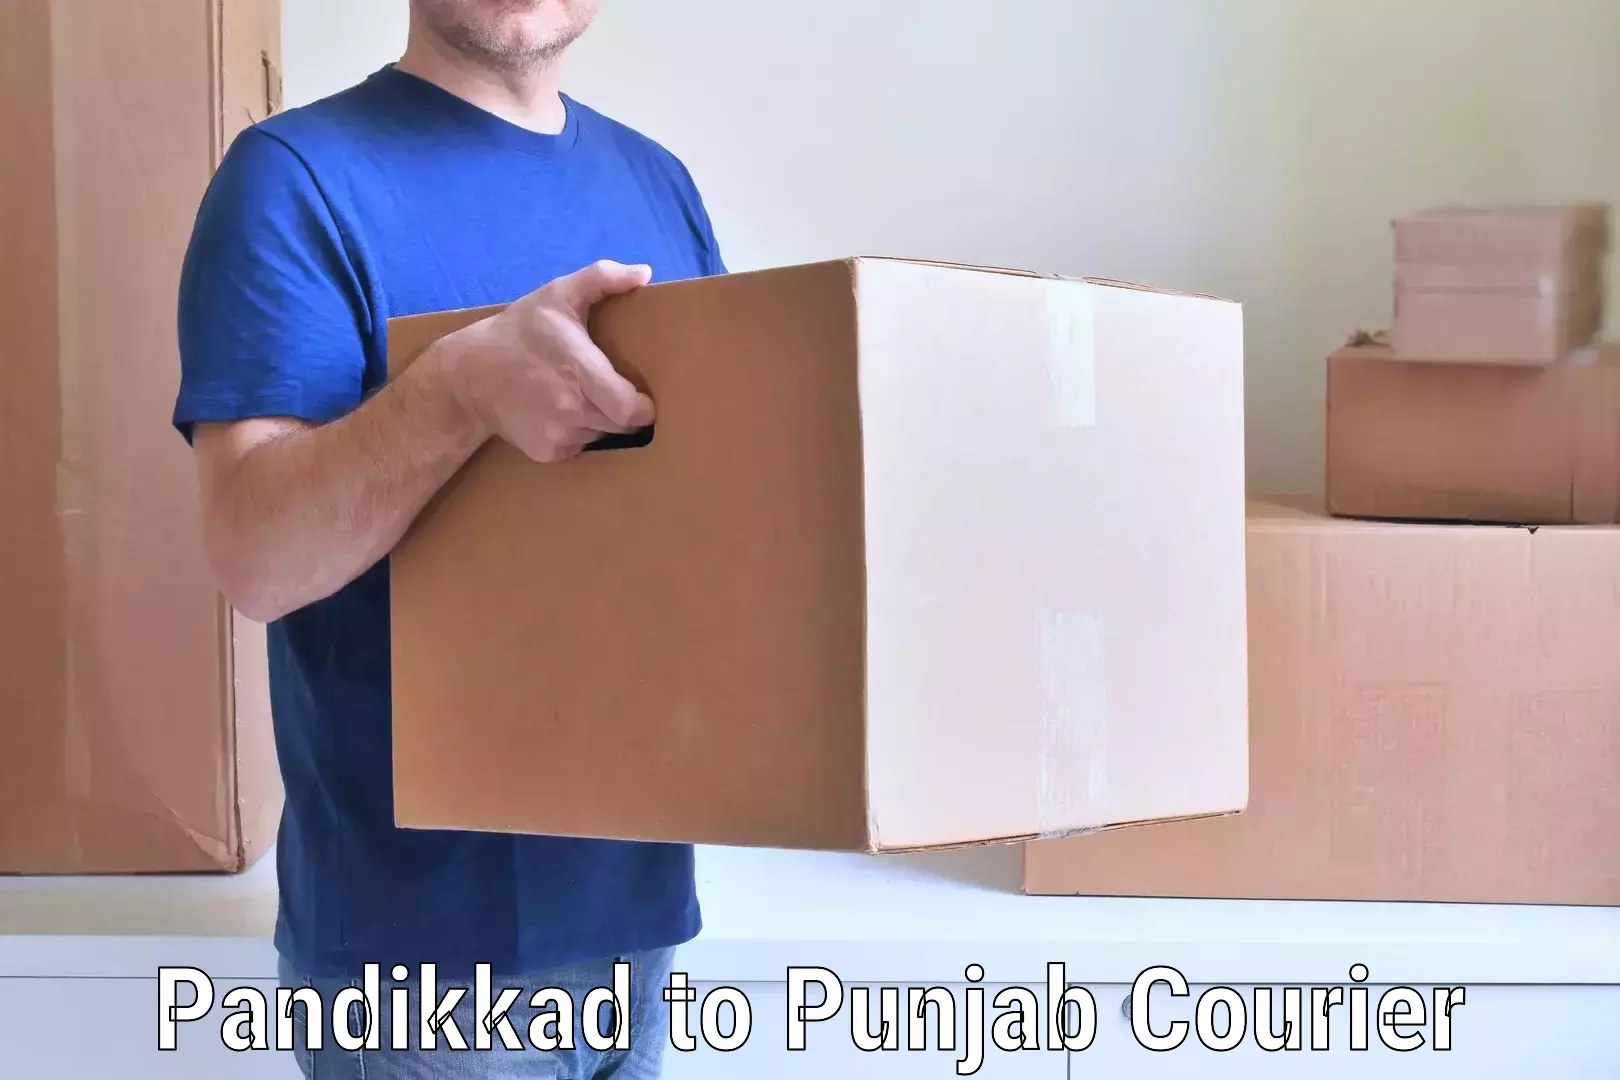 Skilled furniture transporters Pandikkad to Anandpur Sahib